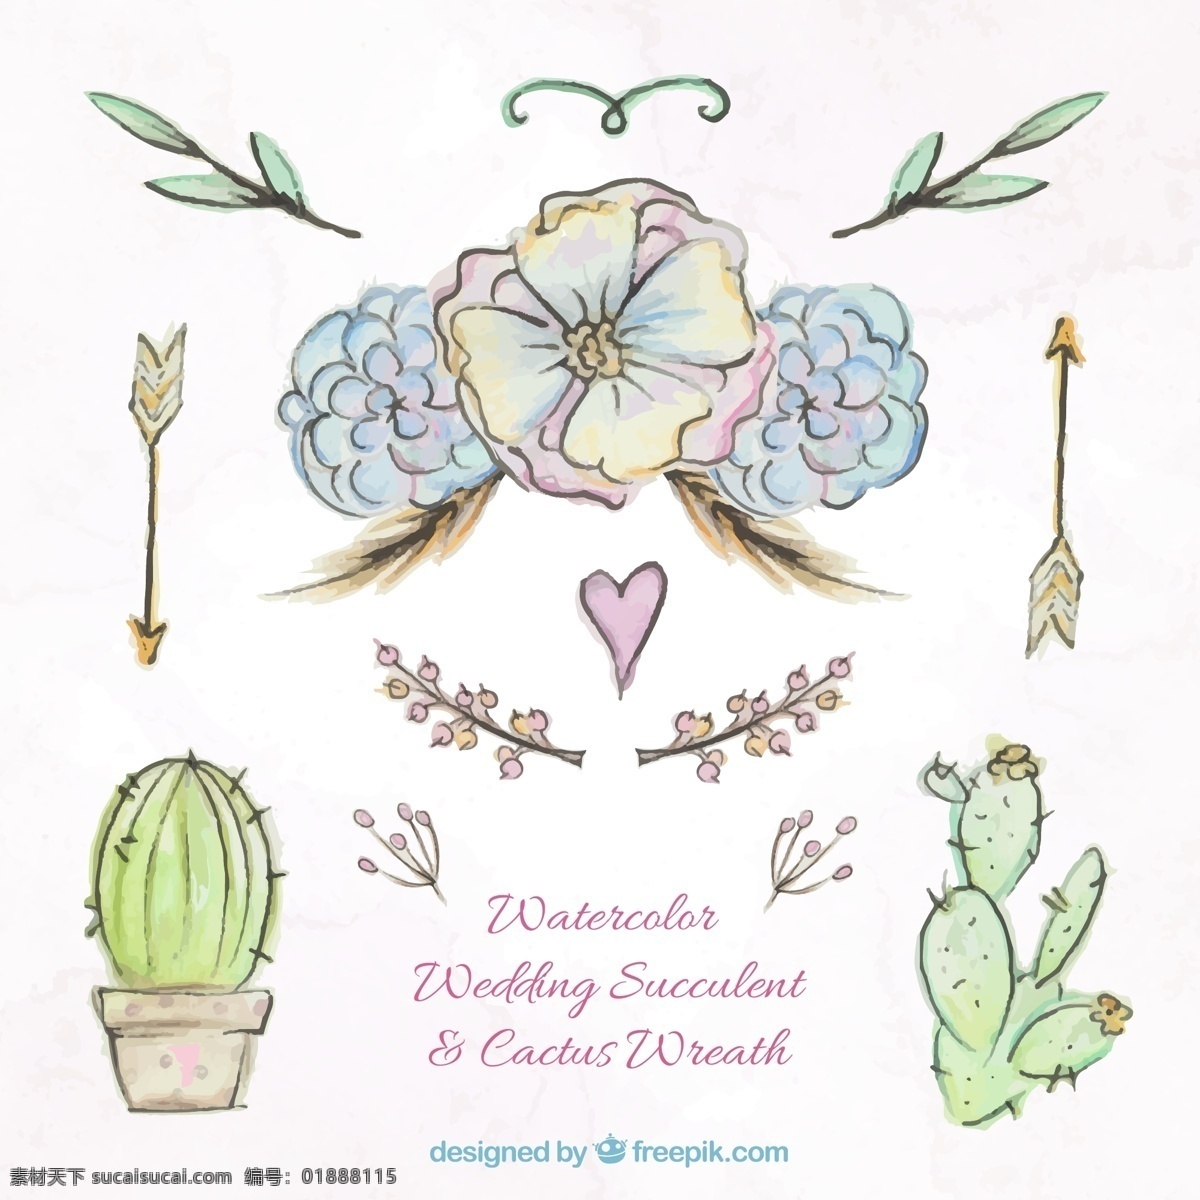 水 蓝色 手绘 款 水彩 绘 婚礼 植物 装饰 矢量图 卡通 矢量素材 设计素材 平面素材